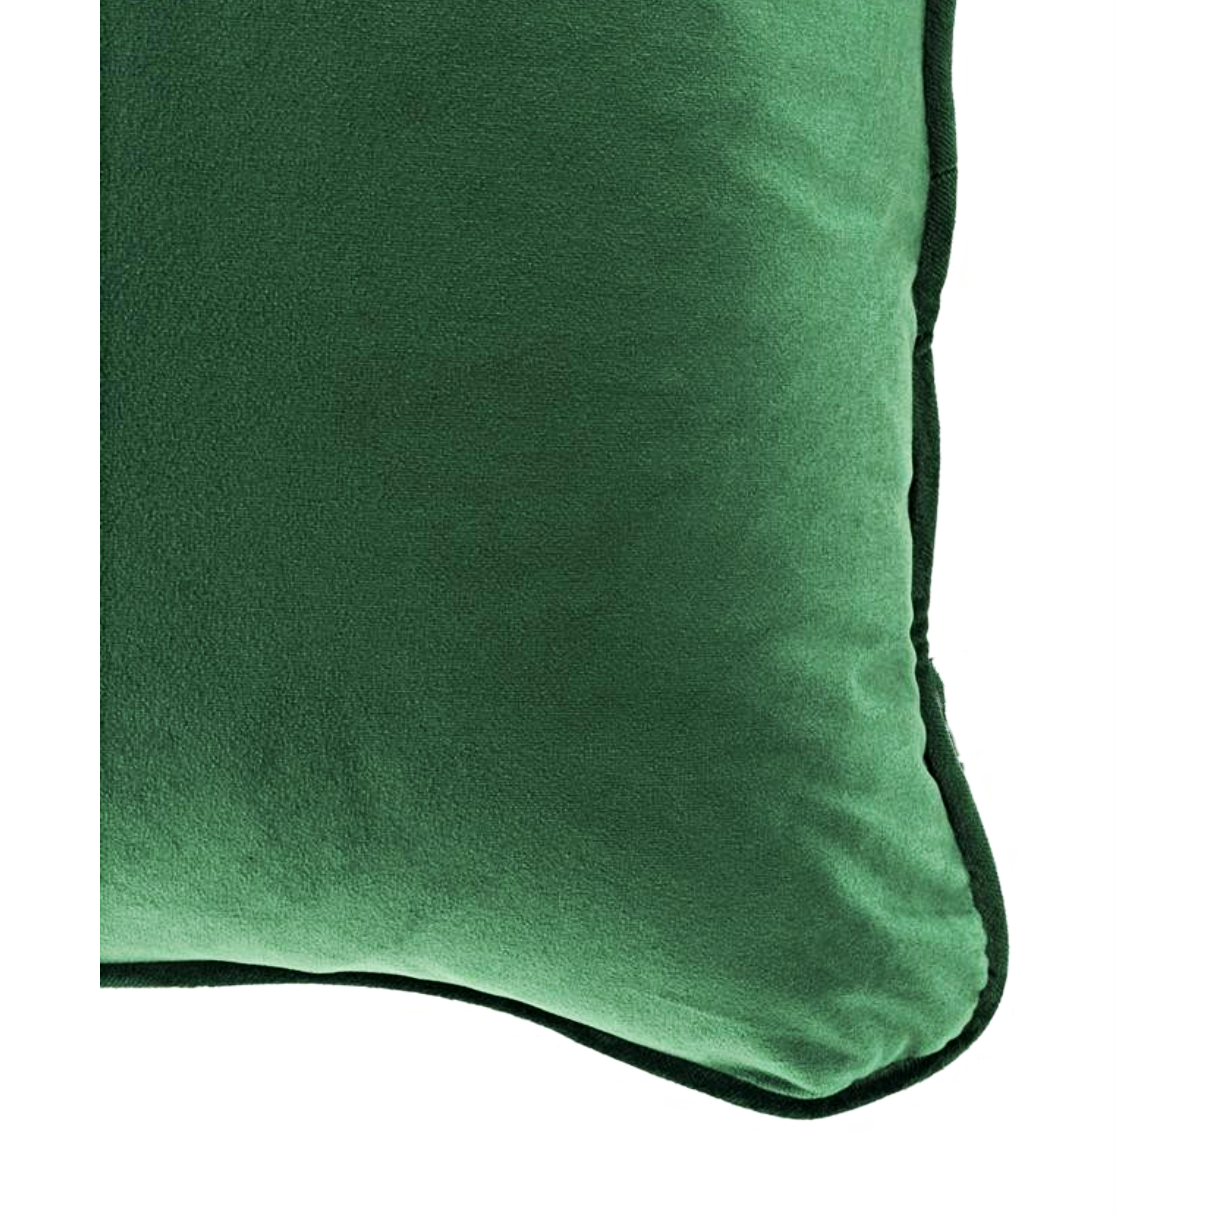 MM01 Piping Cushion  - Green